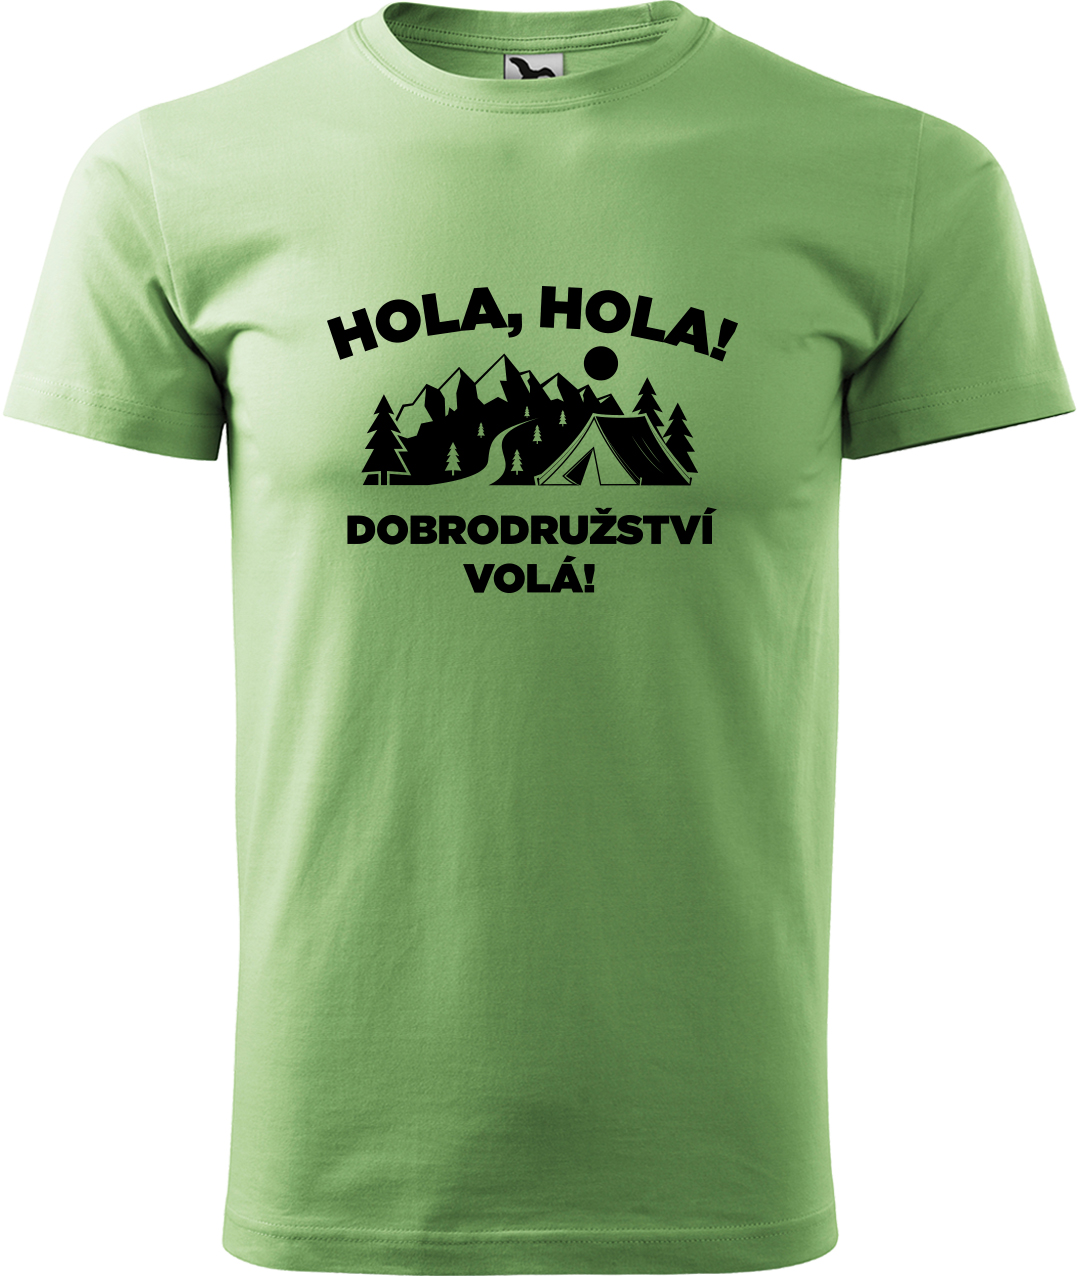 Pánské cestovatelské tričko - Hola hola! Dobrodružství volá! Velikost: S, Barva: Trávově zelená (39), Střih: pánský